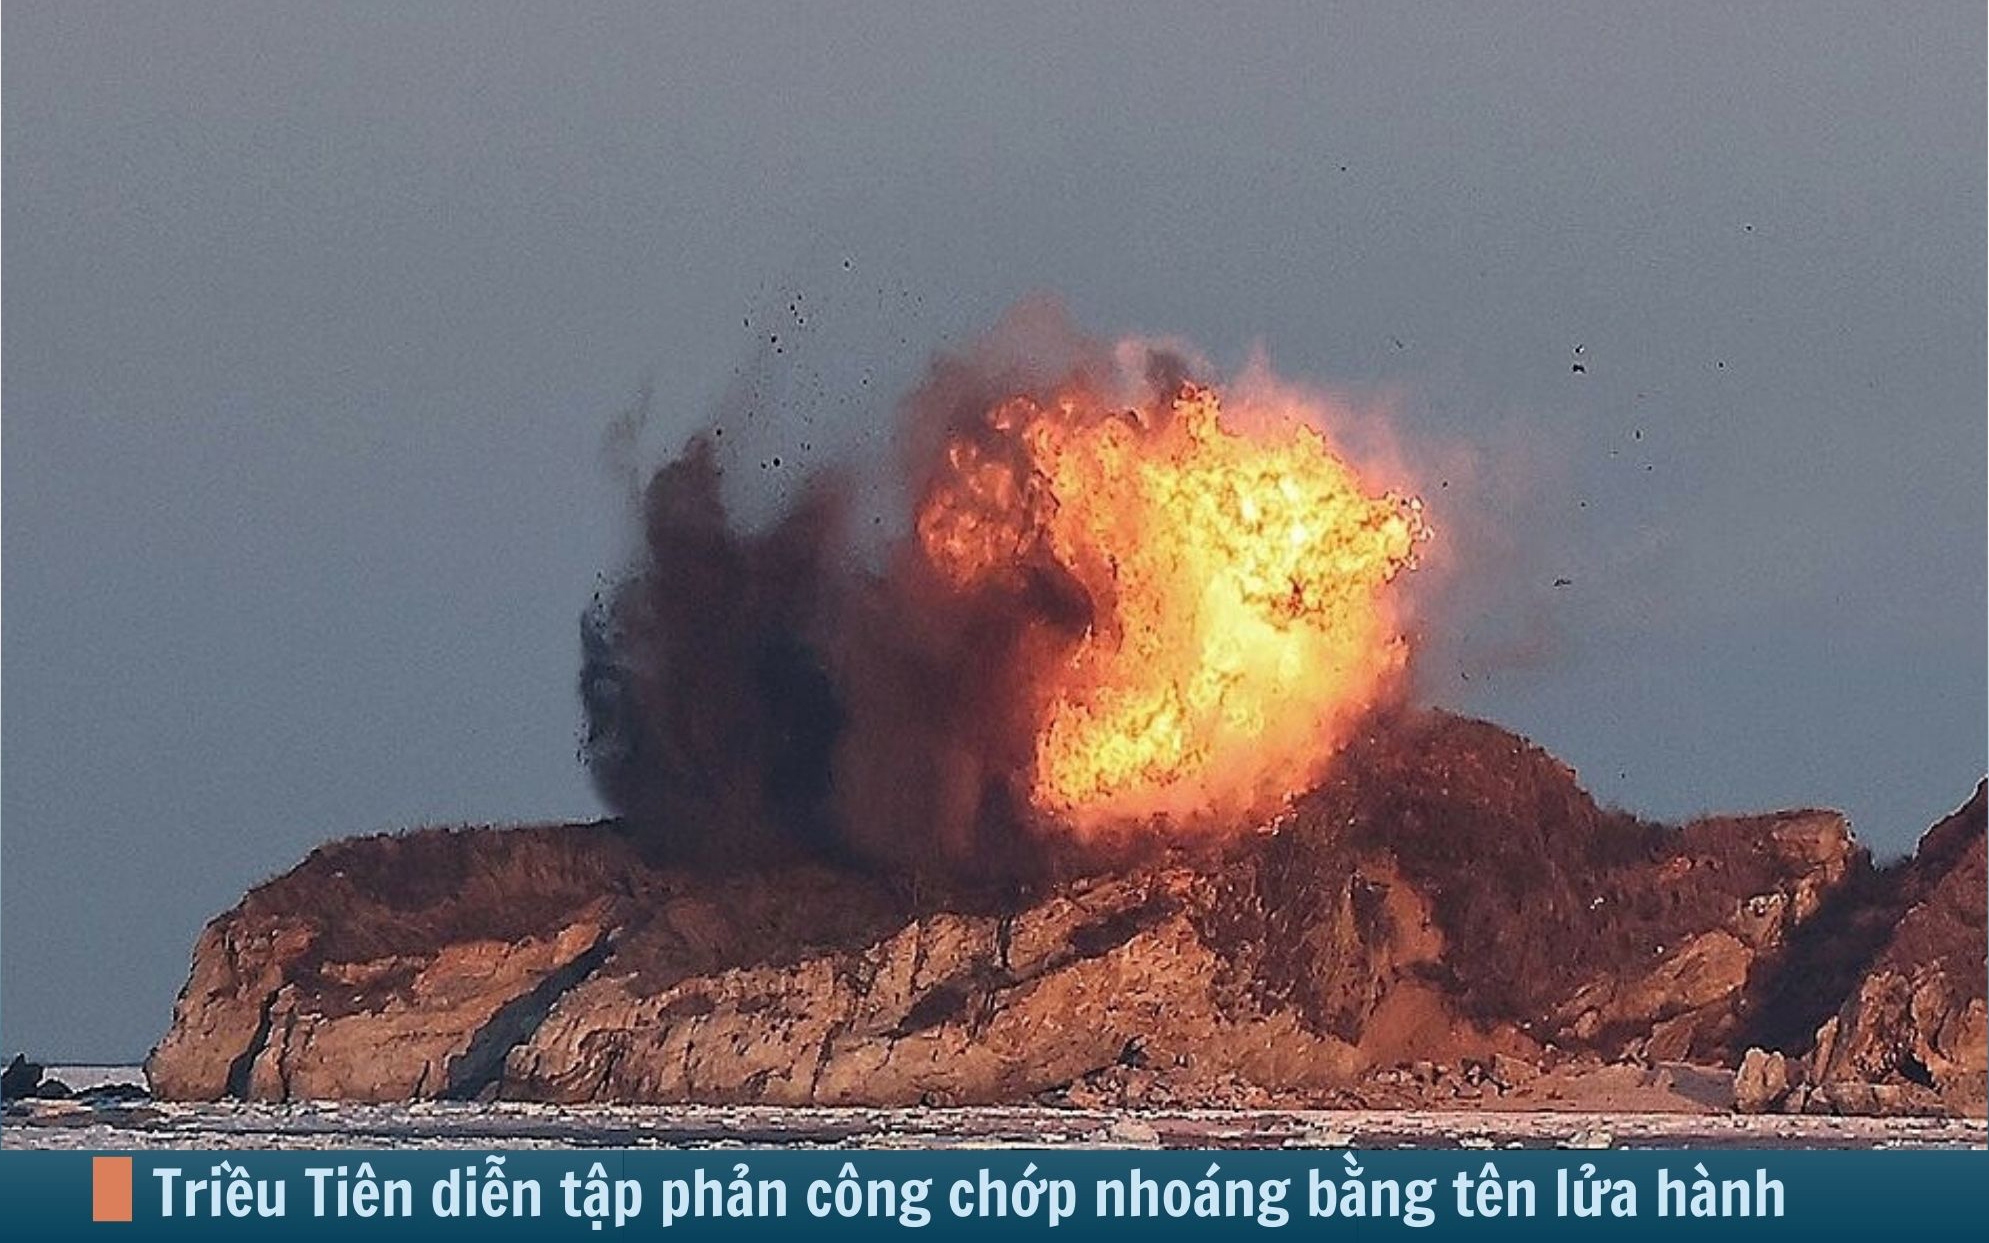 Hình ảnh báo chí 24h: Triều Tiên diễn tập phản công chớp nhoáng bằng tên lửa hành trình